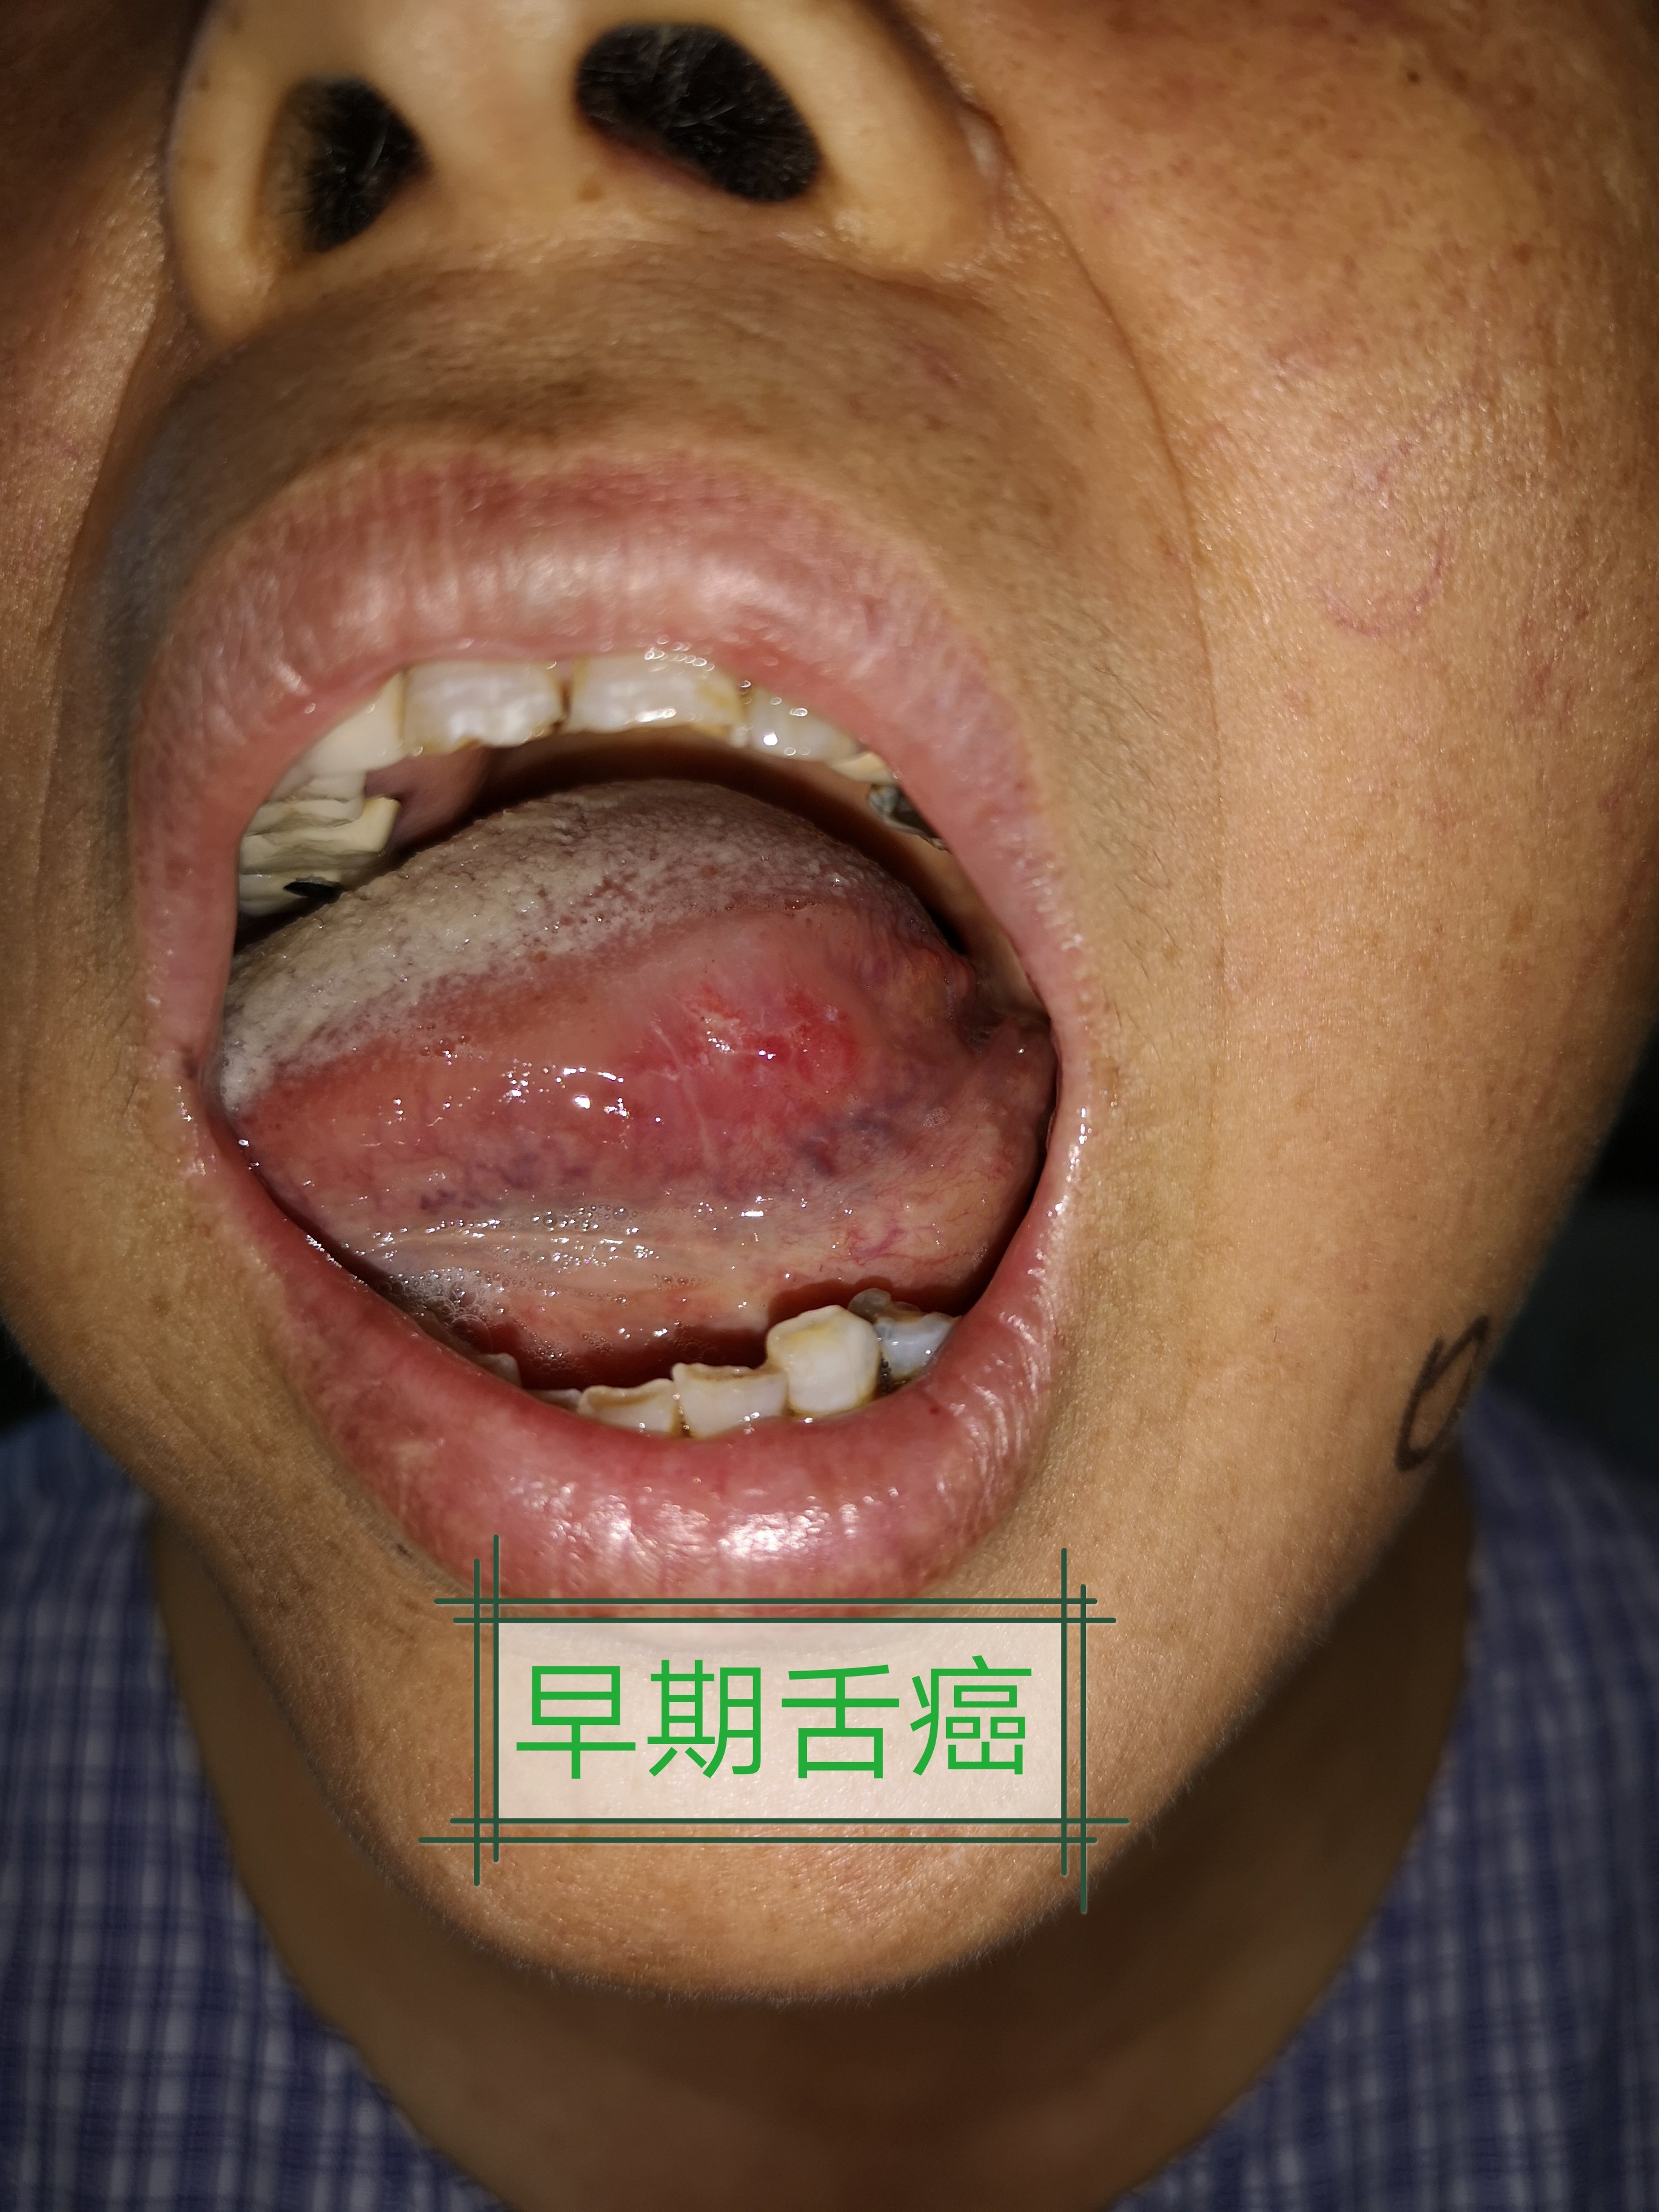 舌癌是头颈外科较常见的恶性肿瘤.